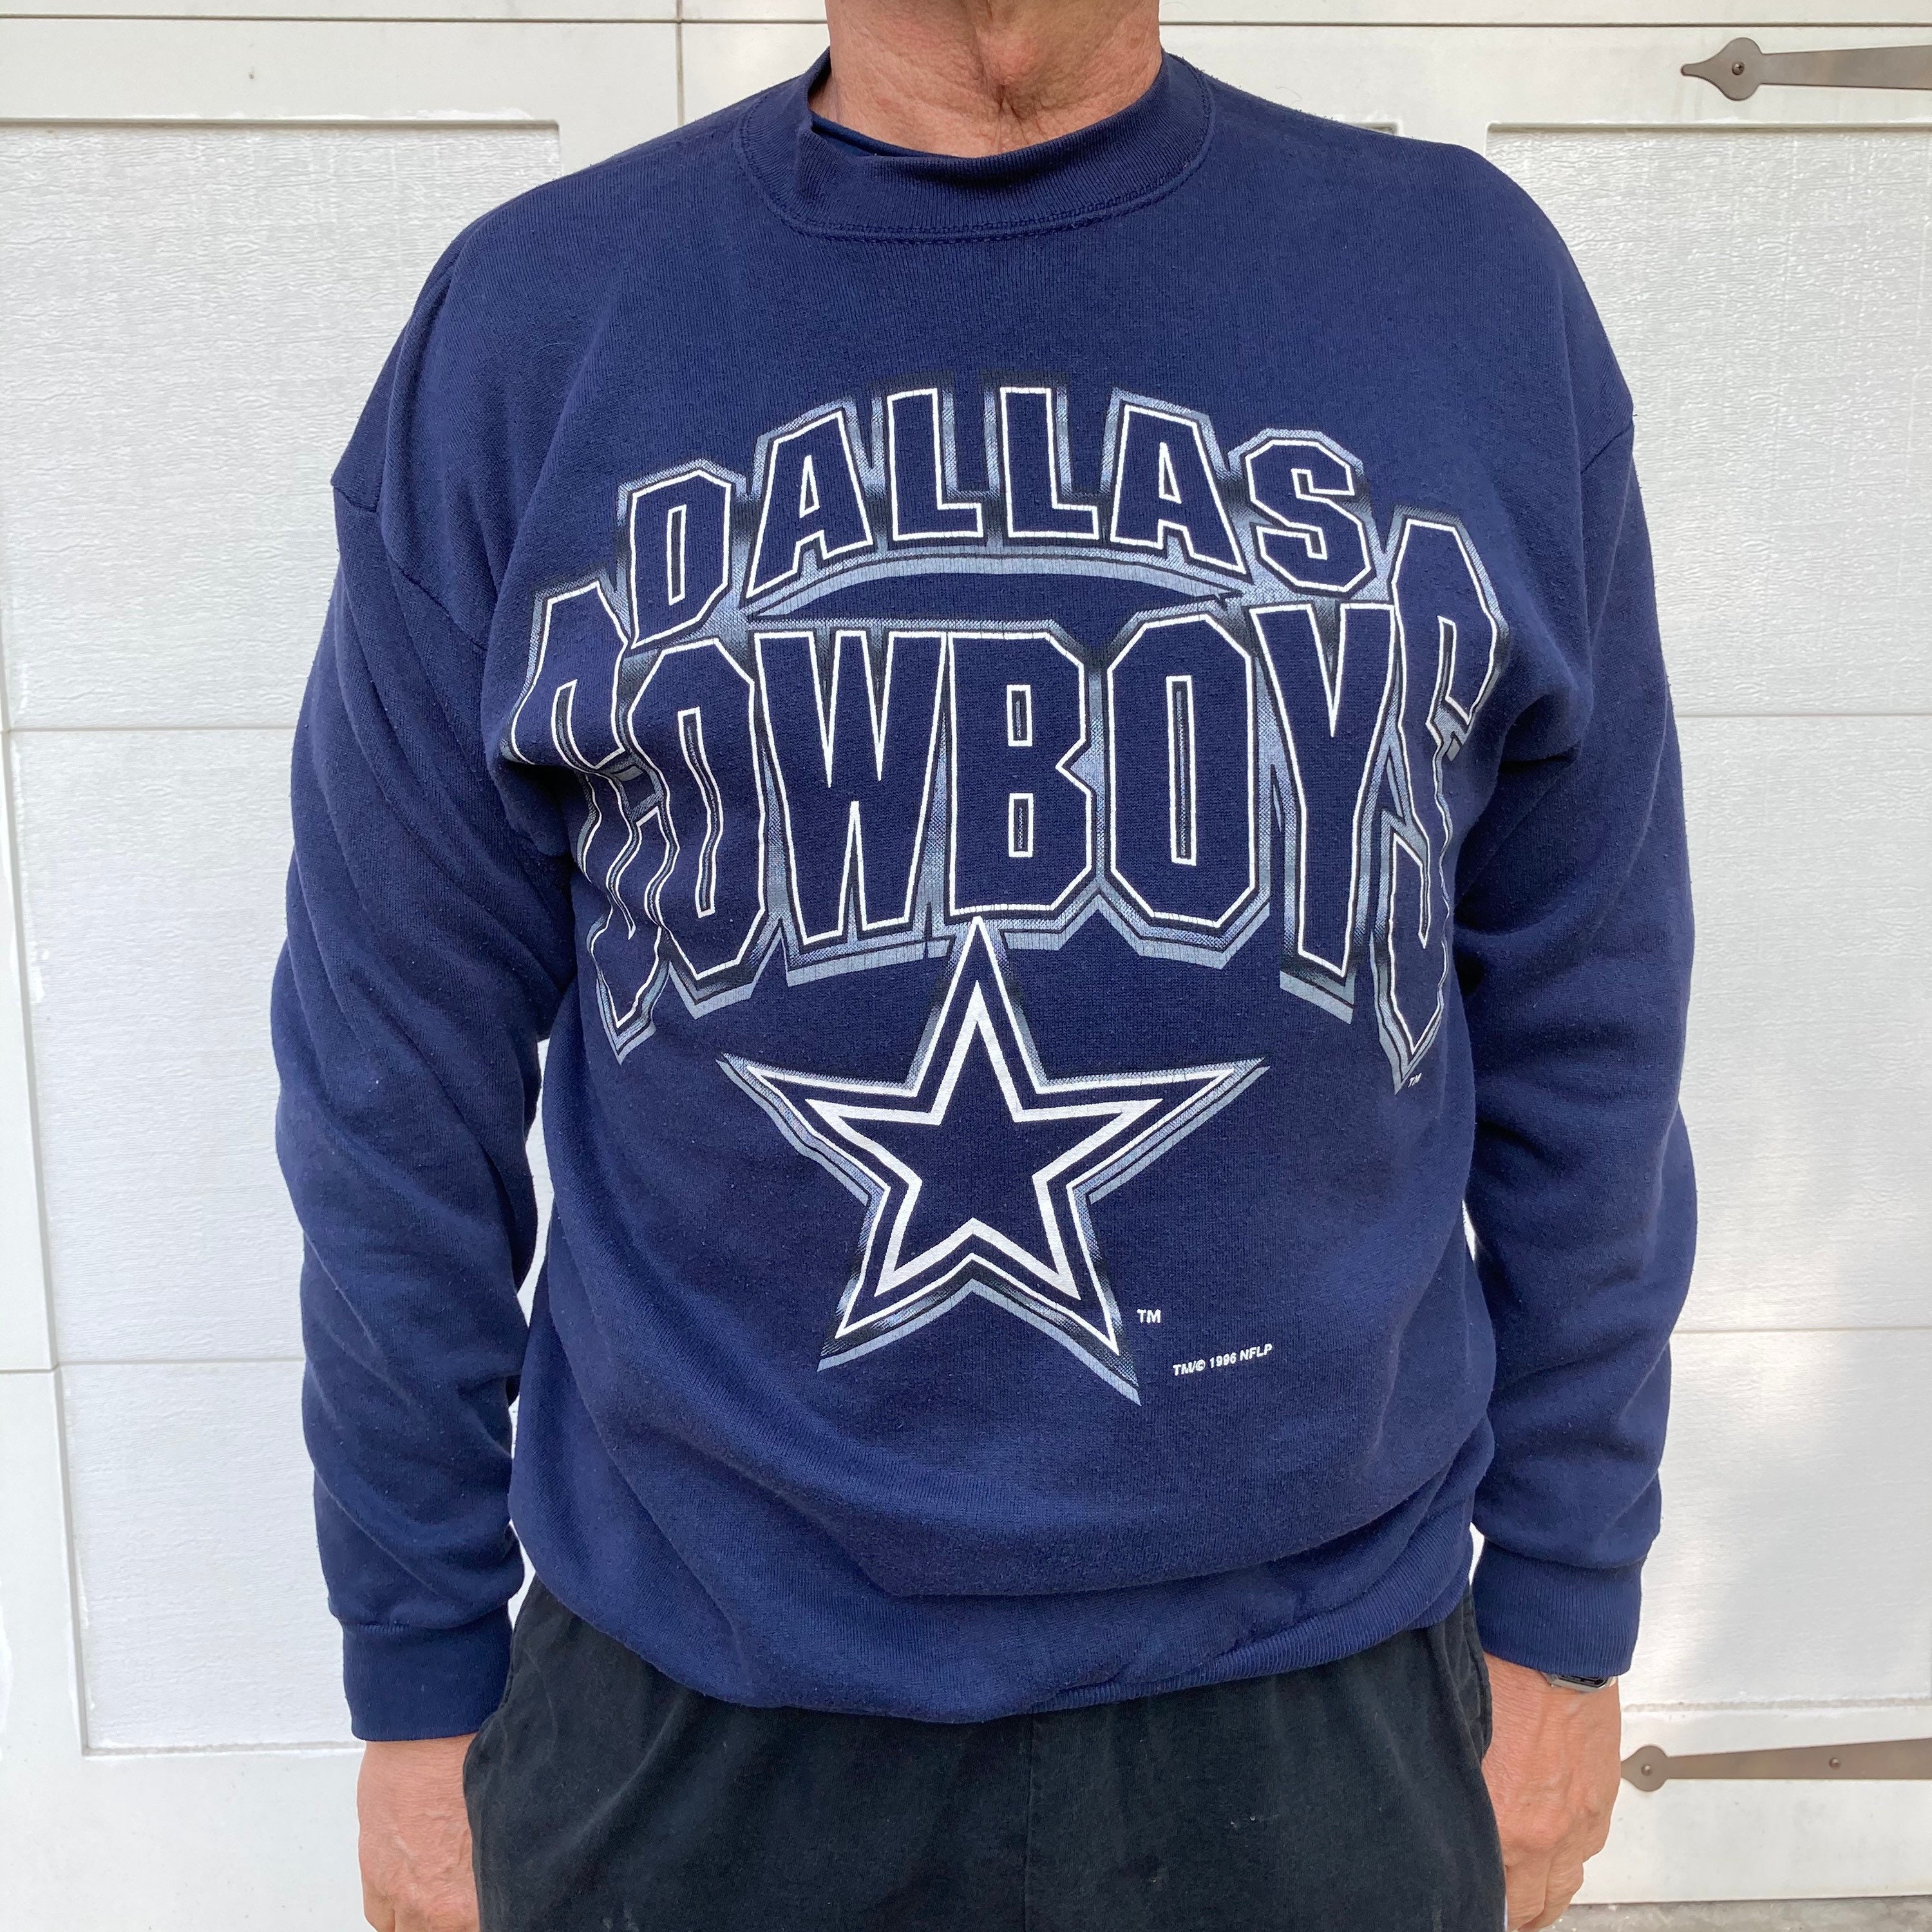 Vintage Dallas Cowboys Crew Neck Sweatshirt Sweater Jersey | Etsy